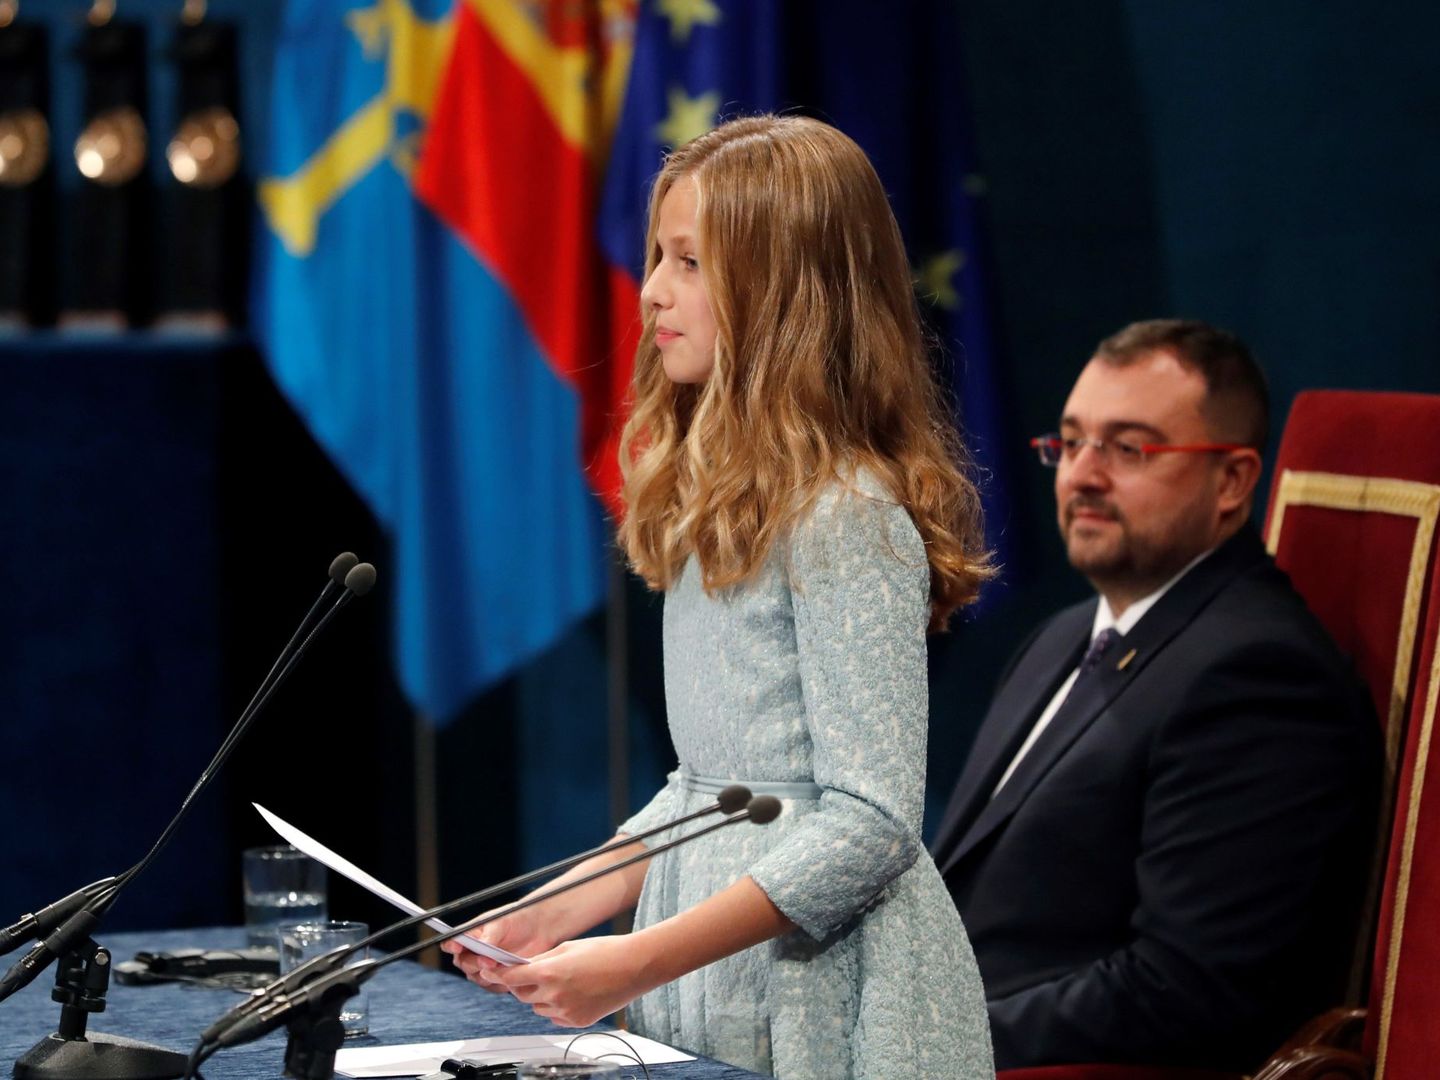 La princesa Leonor pronuncia por primera vez su discurso en la ceremonia de entrega de los Premios Princesa de Asturias 2019. (EFE)